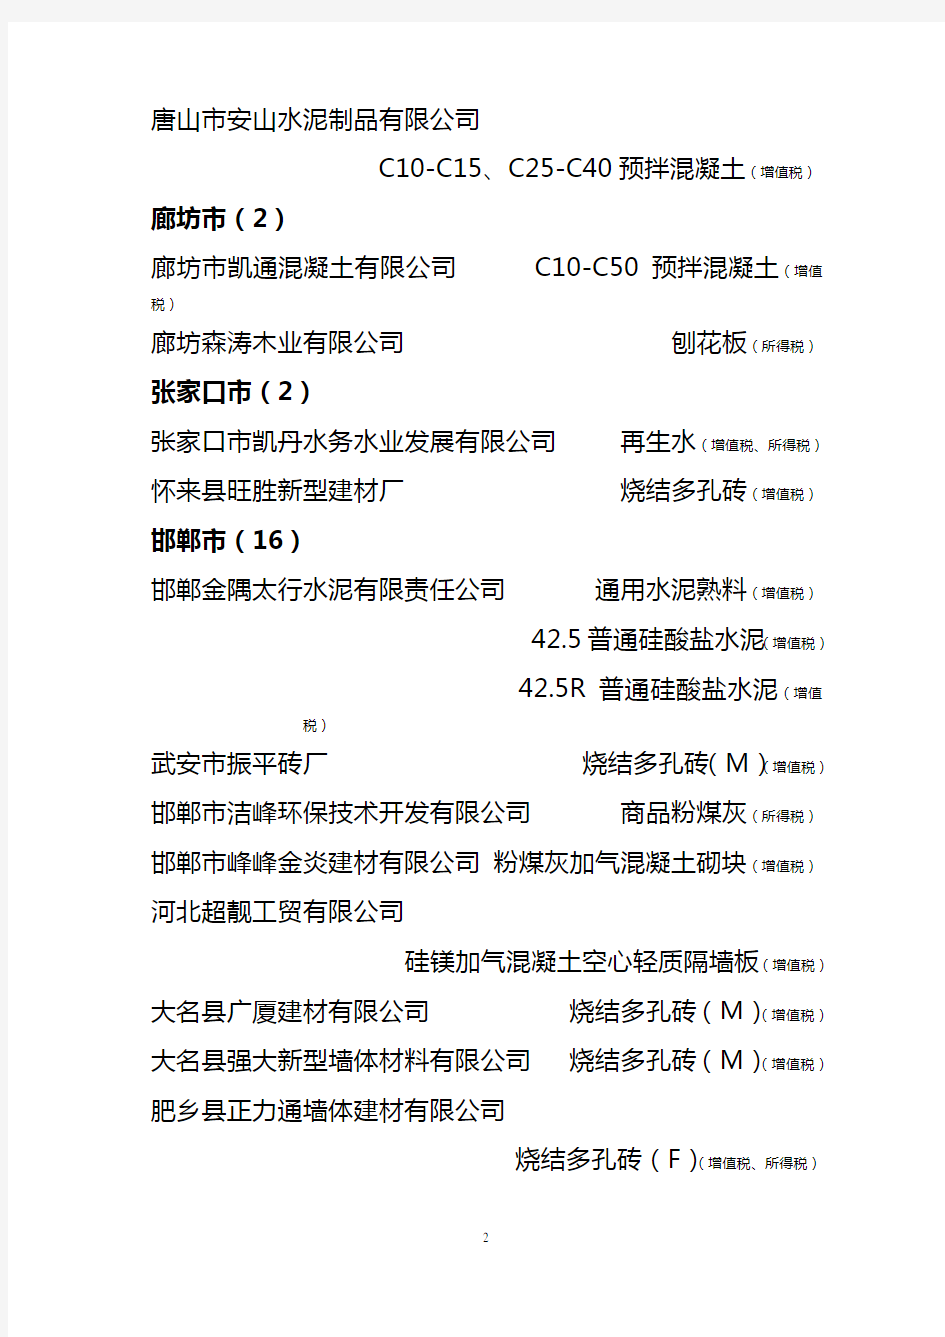 河北省2011年第二批和到期换证资源综合利用企业名单